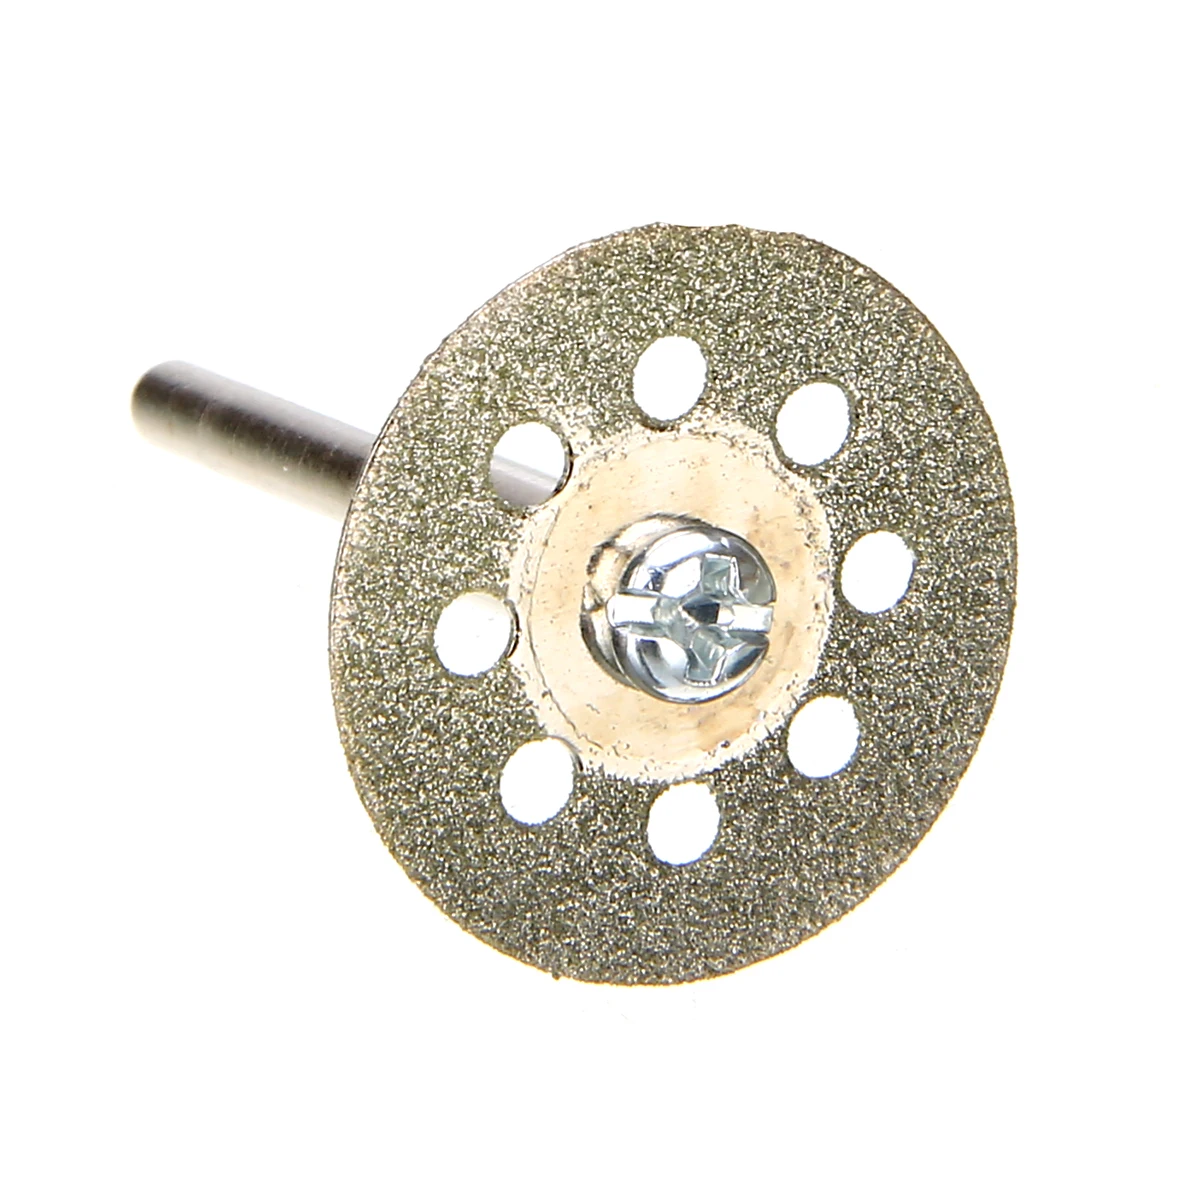 5 шт. 22 мм Алмазный отрезной диск Cut Off колеса комплект с 1 шт. оправки для камня, дерева Пластик поворотный дрель инструмент аксессуар